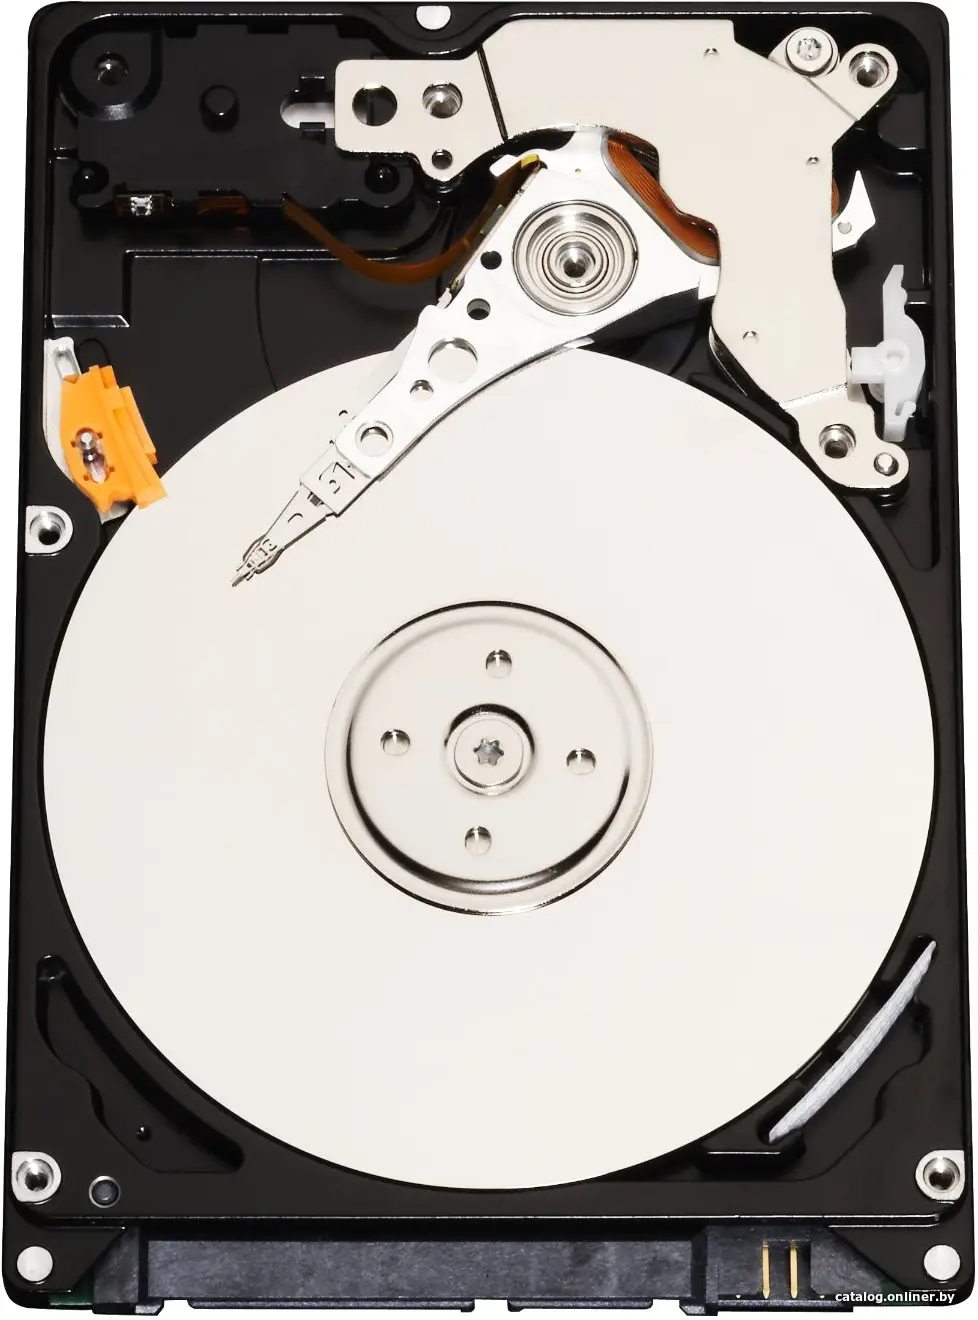 Купить Жесткий диск для сервера 3.5'' 12GBS 10TB HELT72S3T10-0030G INFORTREND, цена, опт и розница